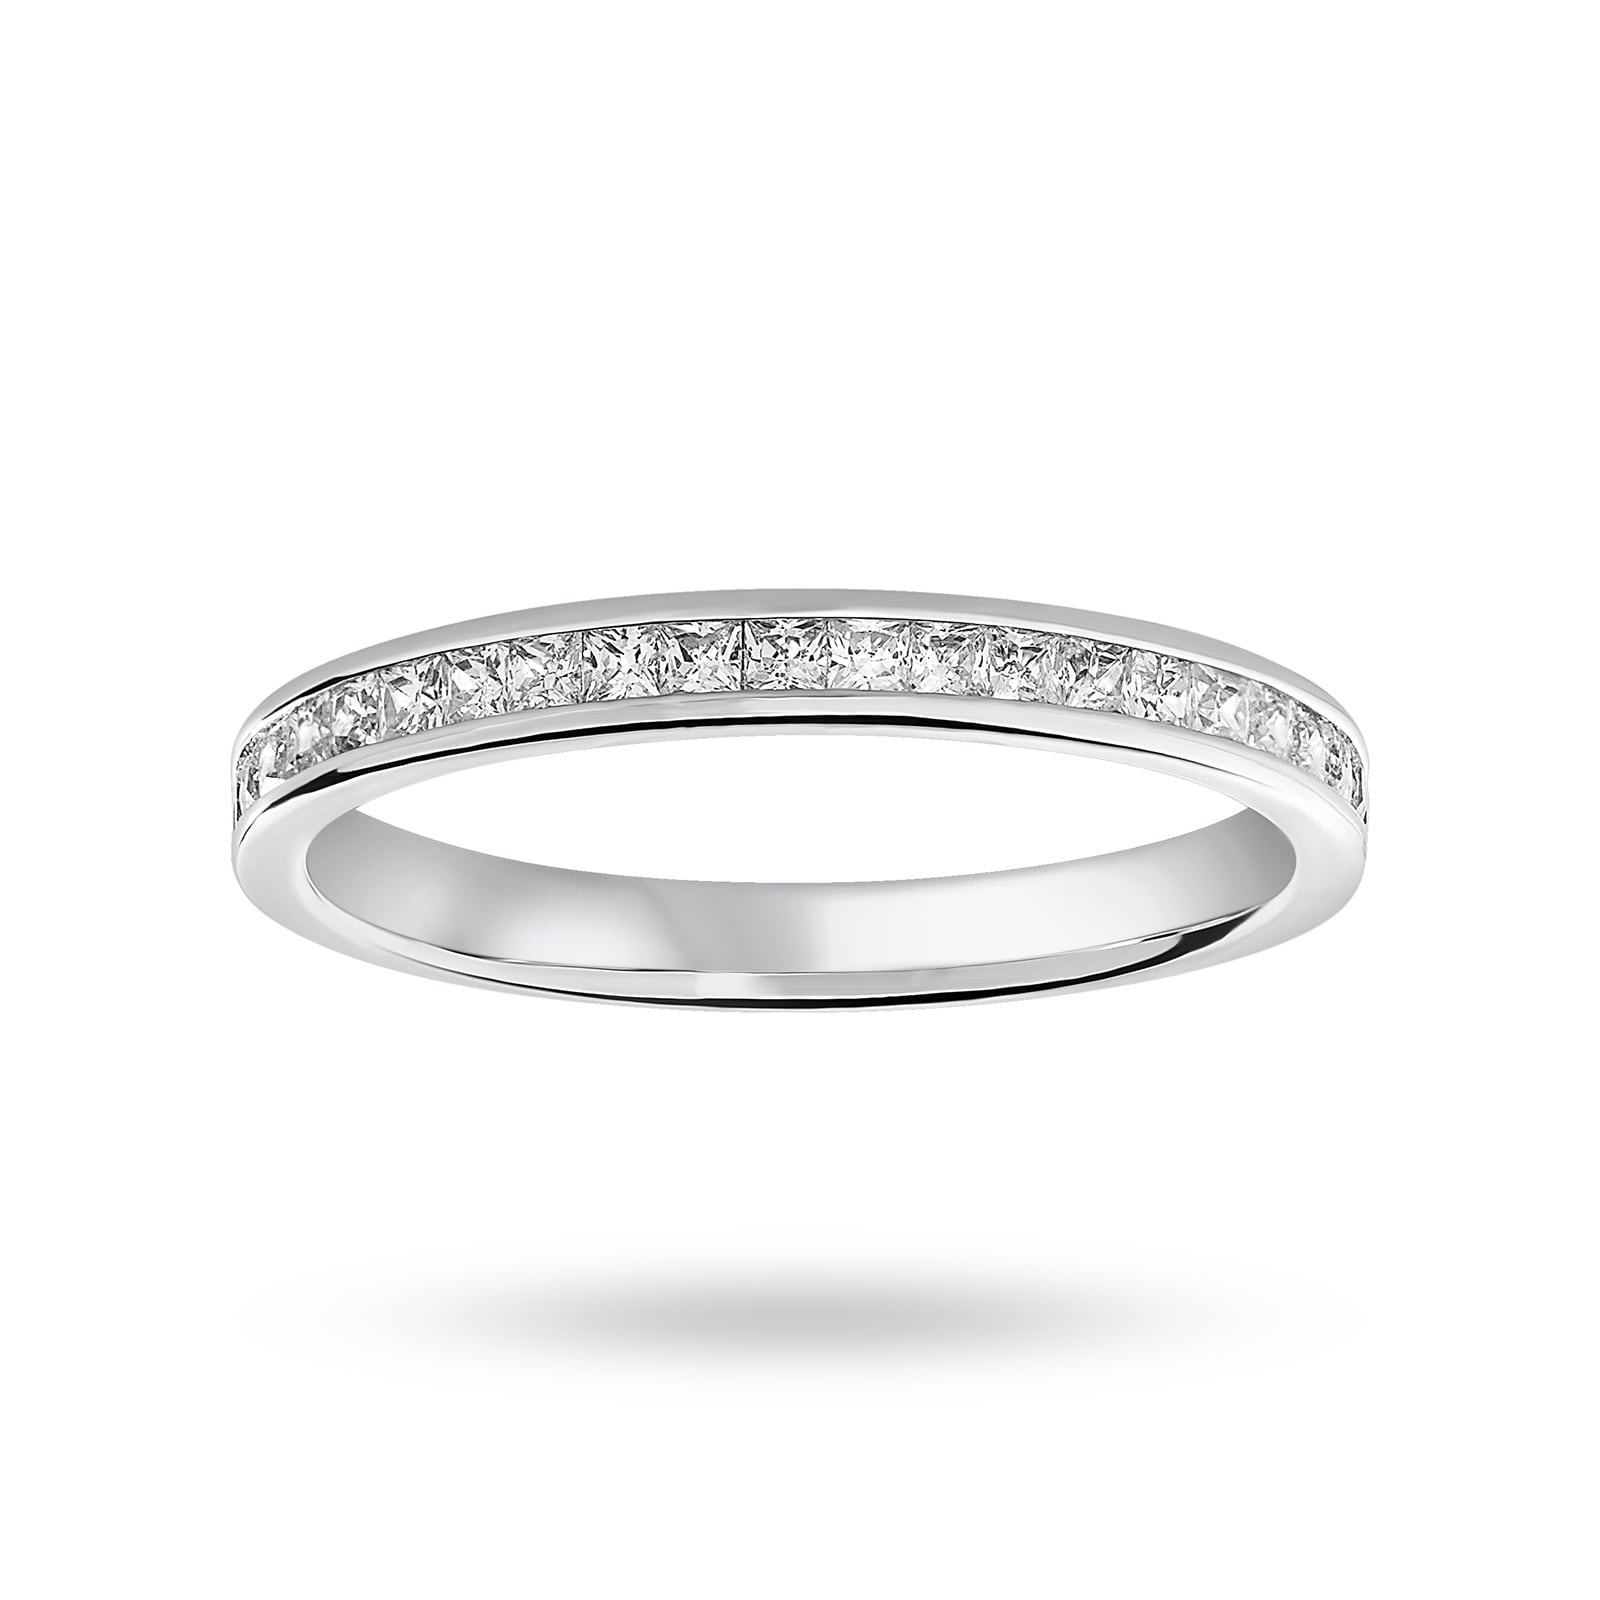 9 Carat White Gold 0.33 Carat Princess Cut Half Eternity Ring - Ring Size O